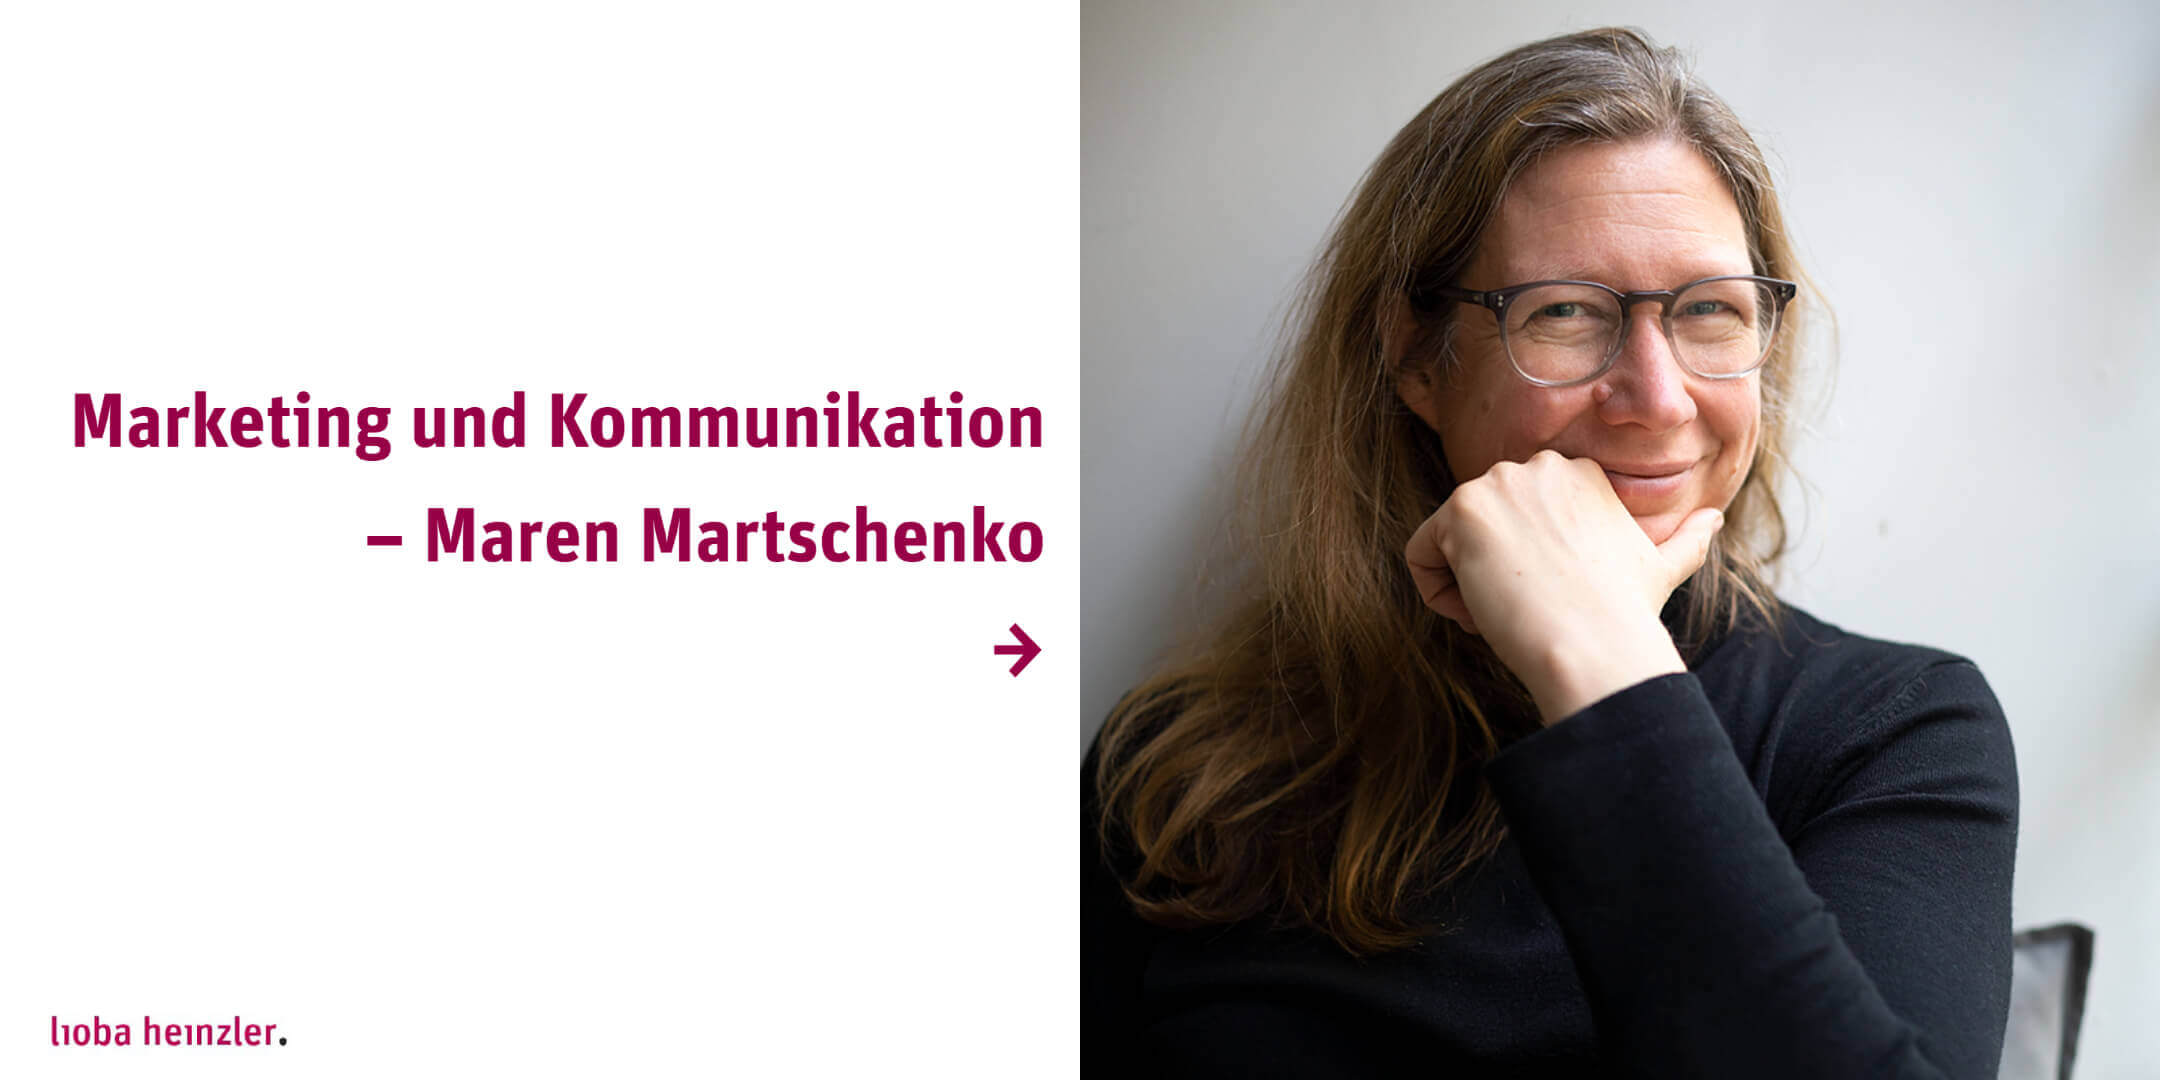 Marketing und Kommunikation – Maren Martschenko